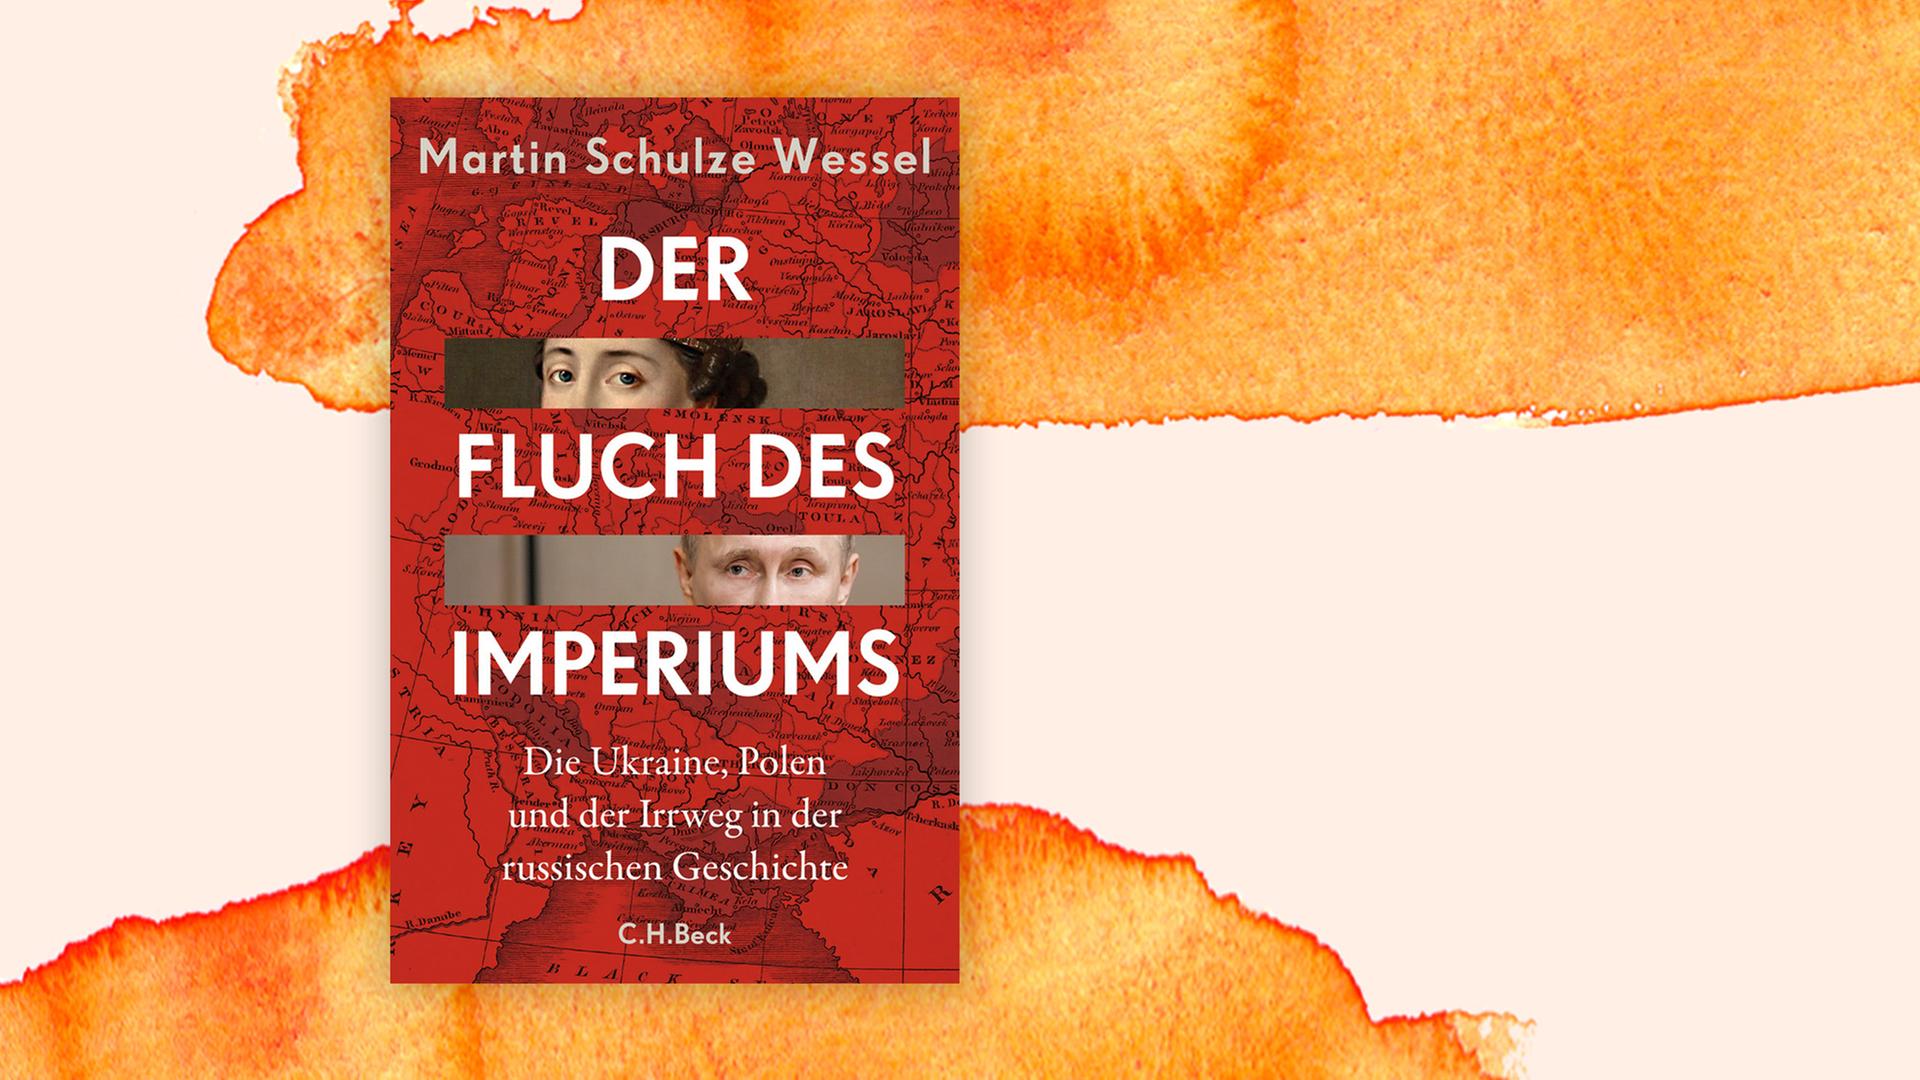 Das Buchcover "Der Fluch des Imperiums - Die Ukraine, Polen und der Irrweg in der russischen Geschichte" von Martin Schulze Wessel ist vor einem grafischen Hintergrund zu sehen.